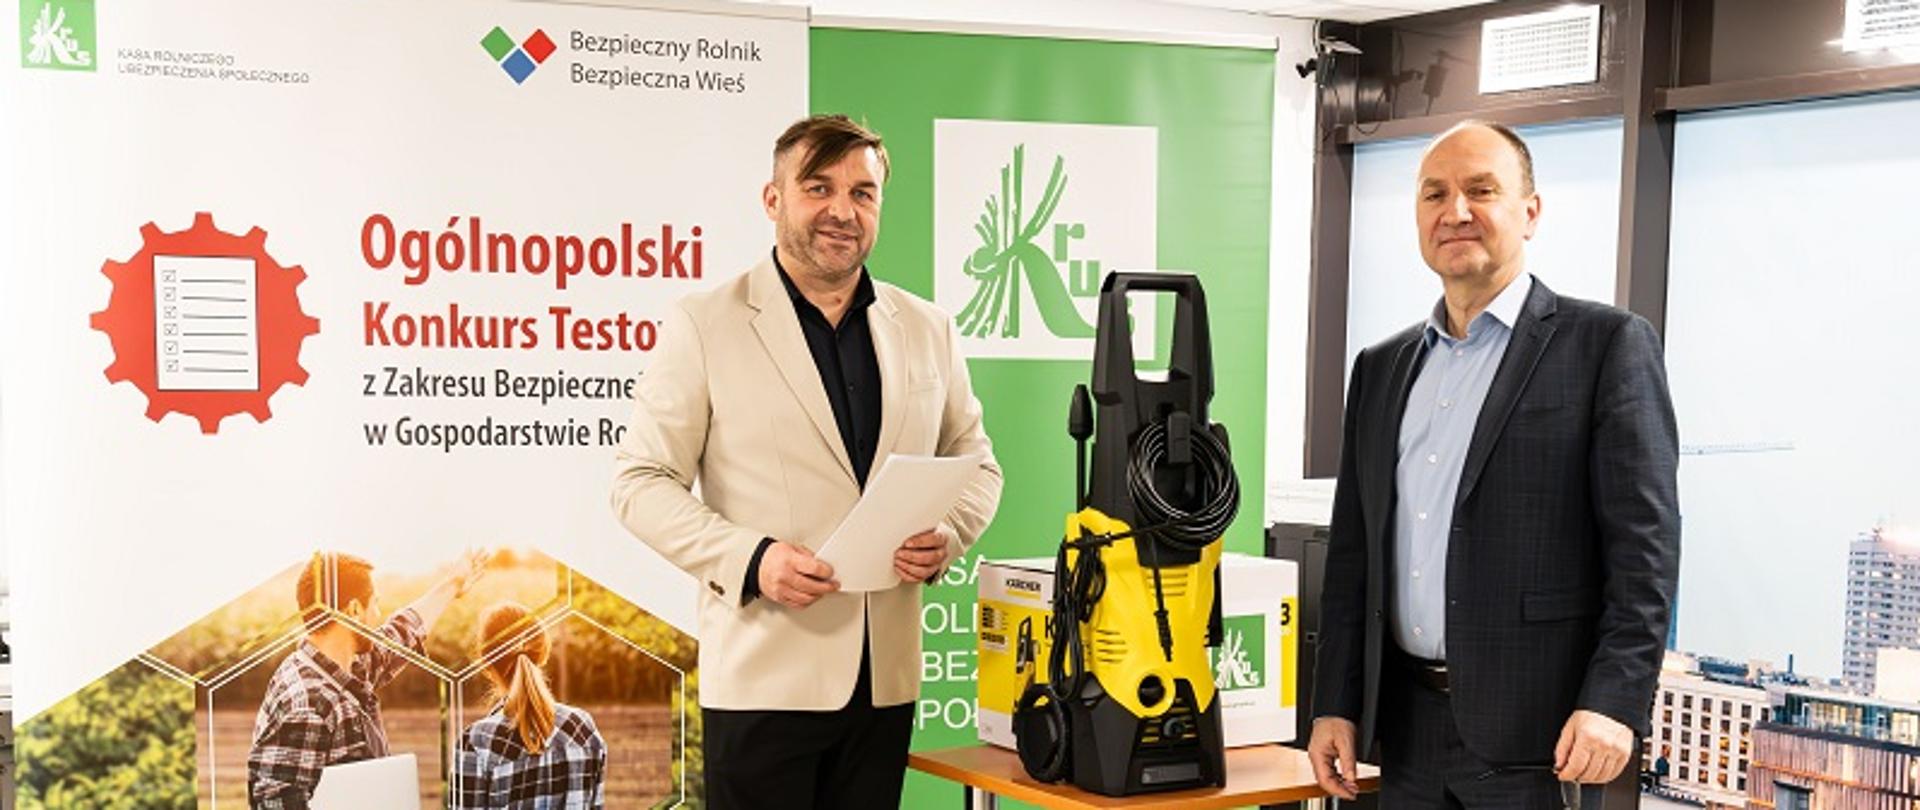 Od lewej: Dyrektor Biura Prewencji KRUS Cezary Nobis oraz Zastępca Prezesa Kasy Rolniczego Ubezpieczenia Społecznego Jacek Paziewski stoją obok stolika z nagrodą w konkursie testowym w postaci myjki ciśnieniowej